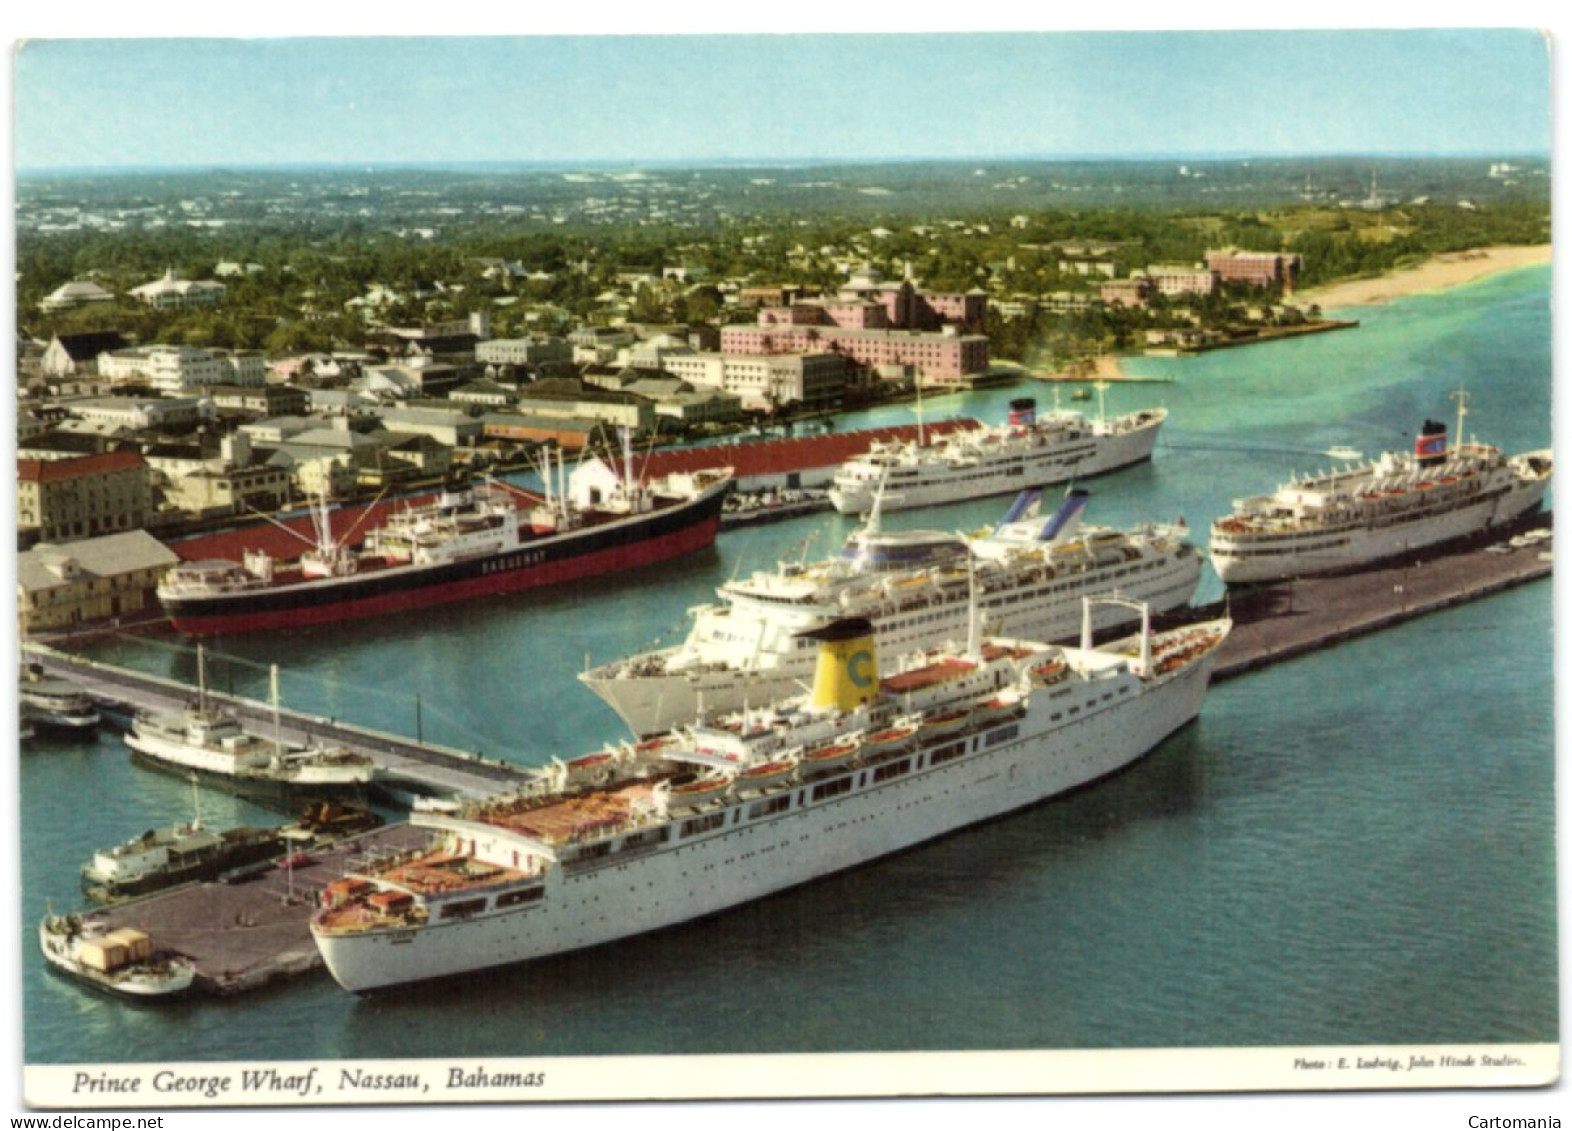 Prince George Wharf - Nassau - Bahamas - Bahama's